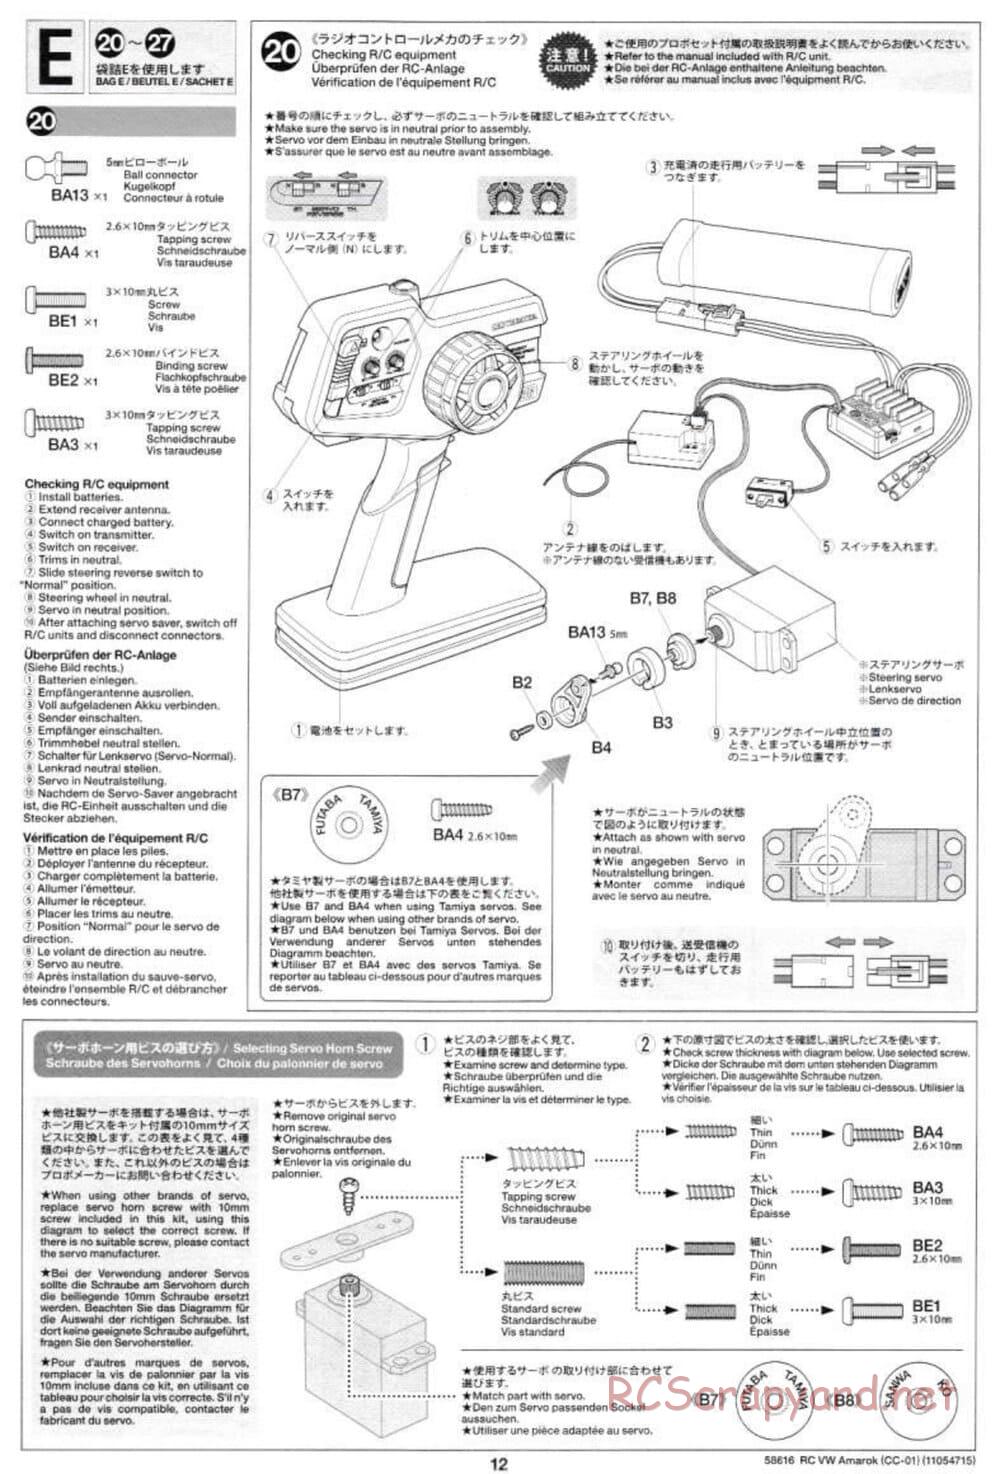 Tamiya - Volkswagen Amarok - CC-01 Chassis - Manual - Page 12